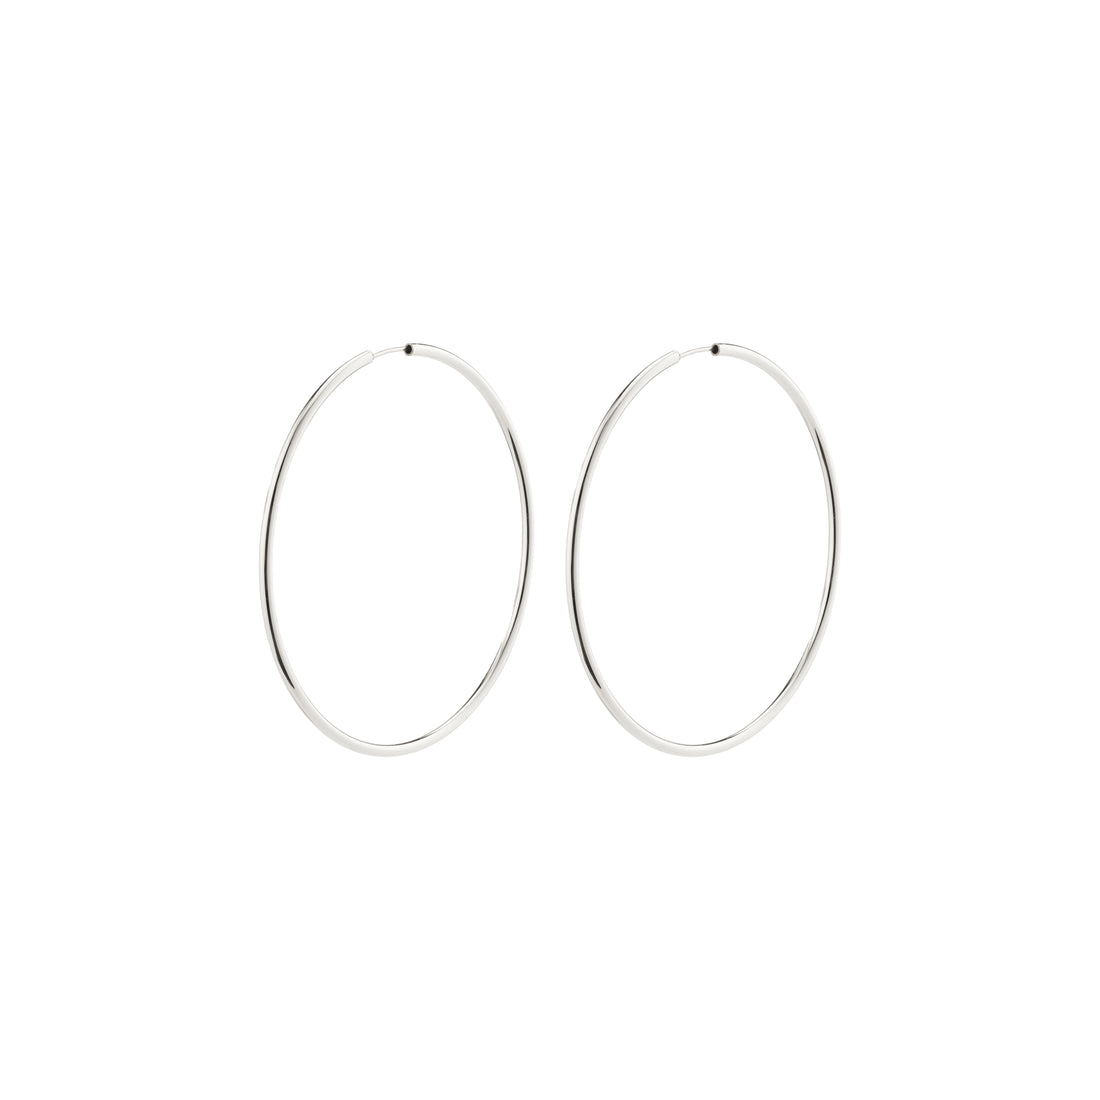 APRIL recycled large hoop earrings